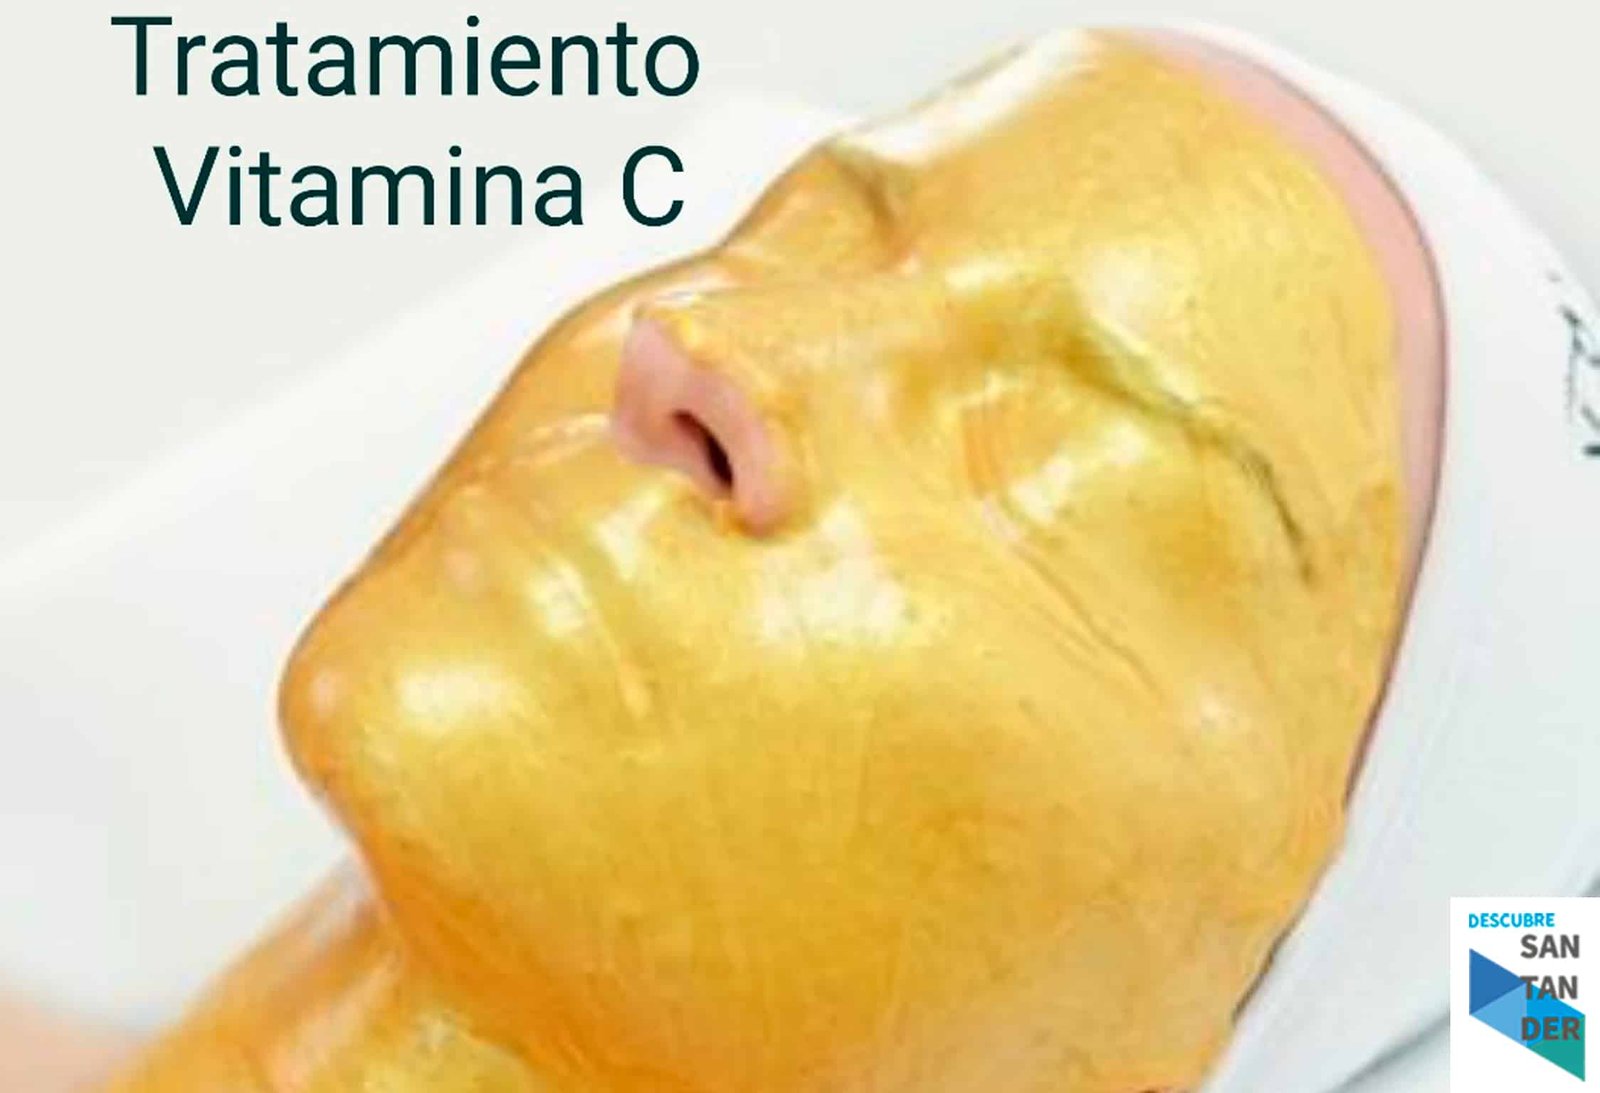 Tratamiento antienvejecimiento - Estética Inma Martínez